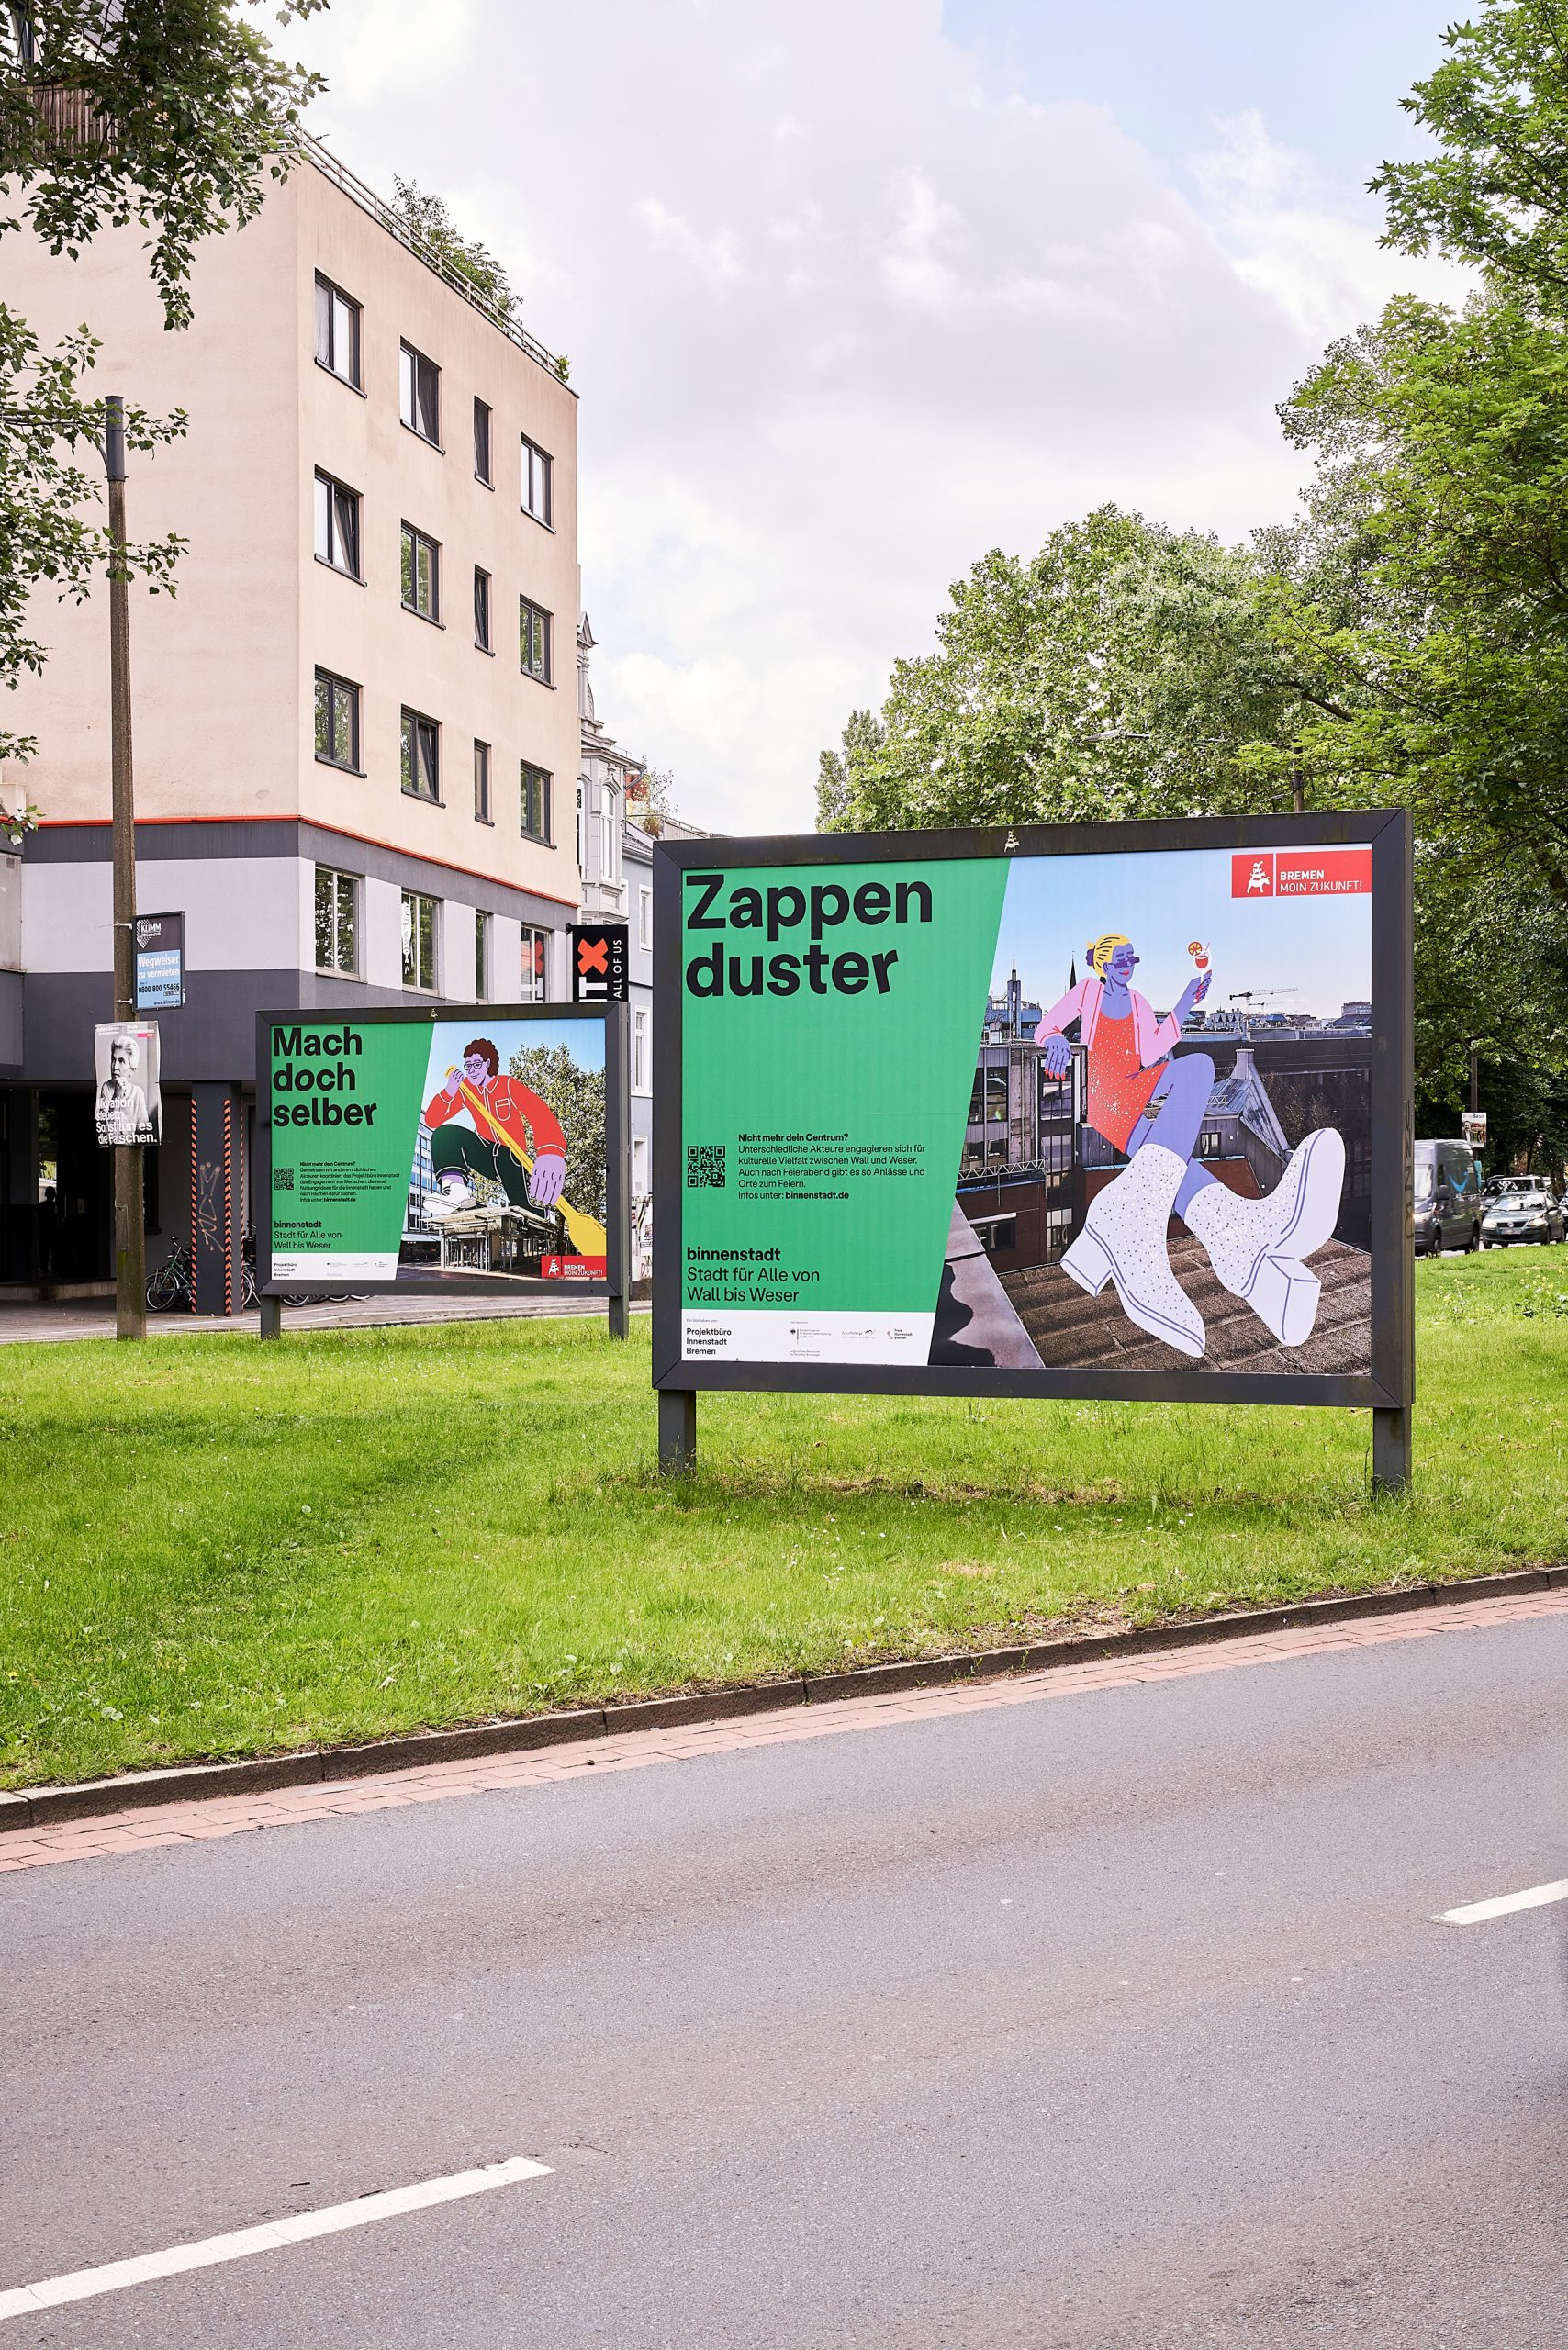 Großflächen-Plakate zur Kampagne binnenstadt